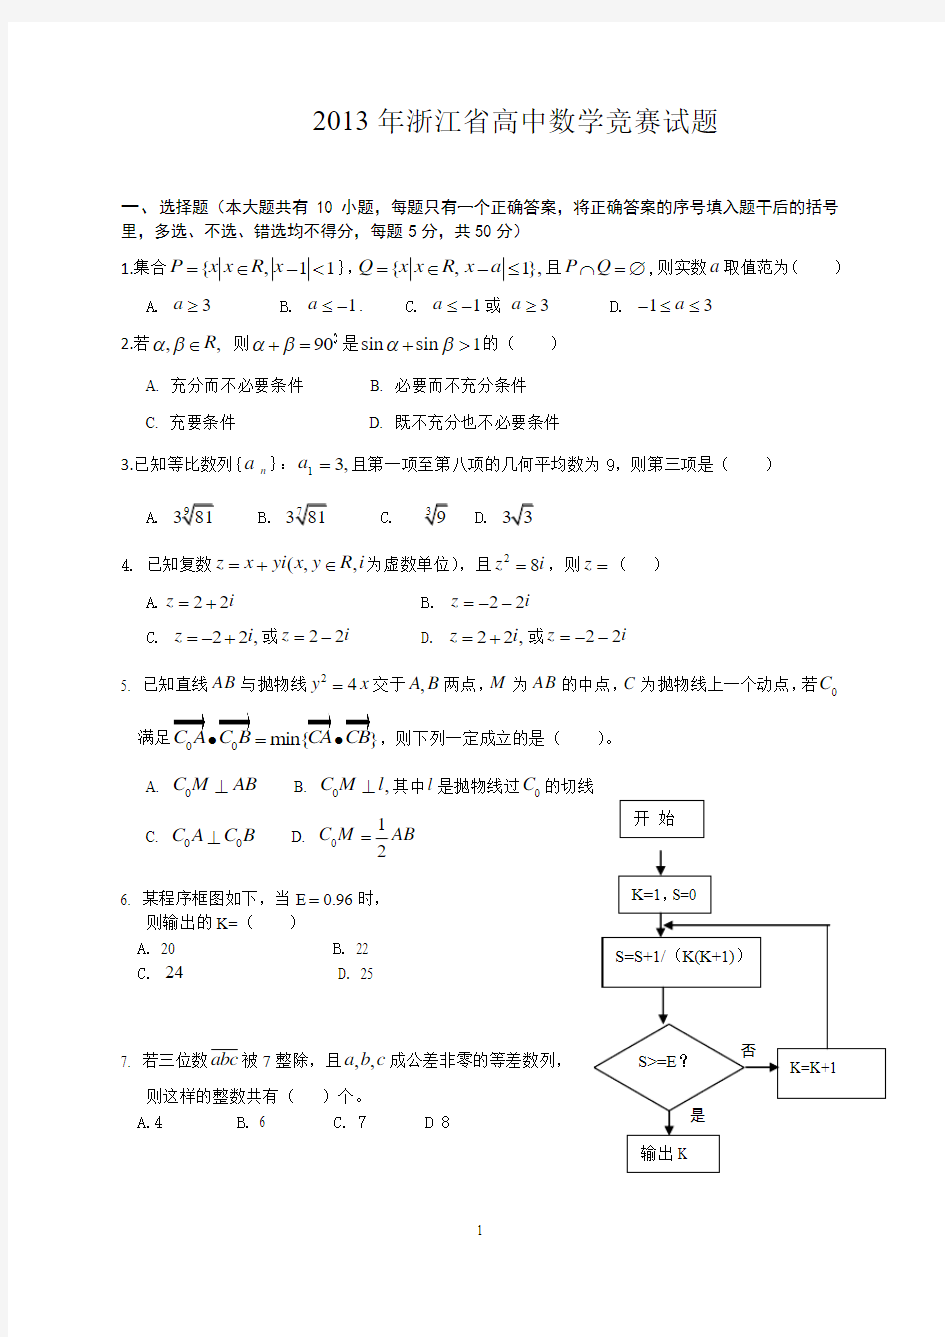 2013年浙江省高中数学竞赛试题 (1)